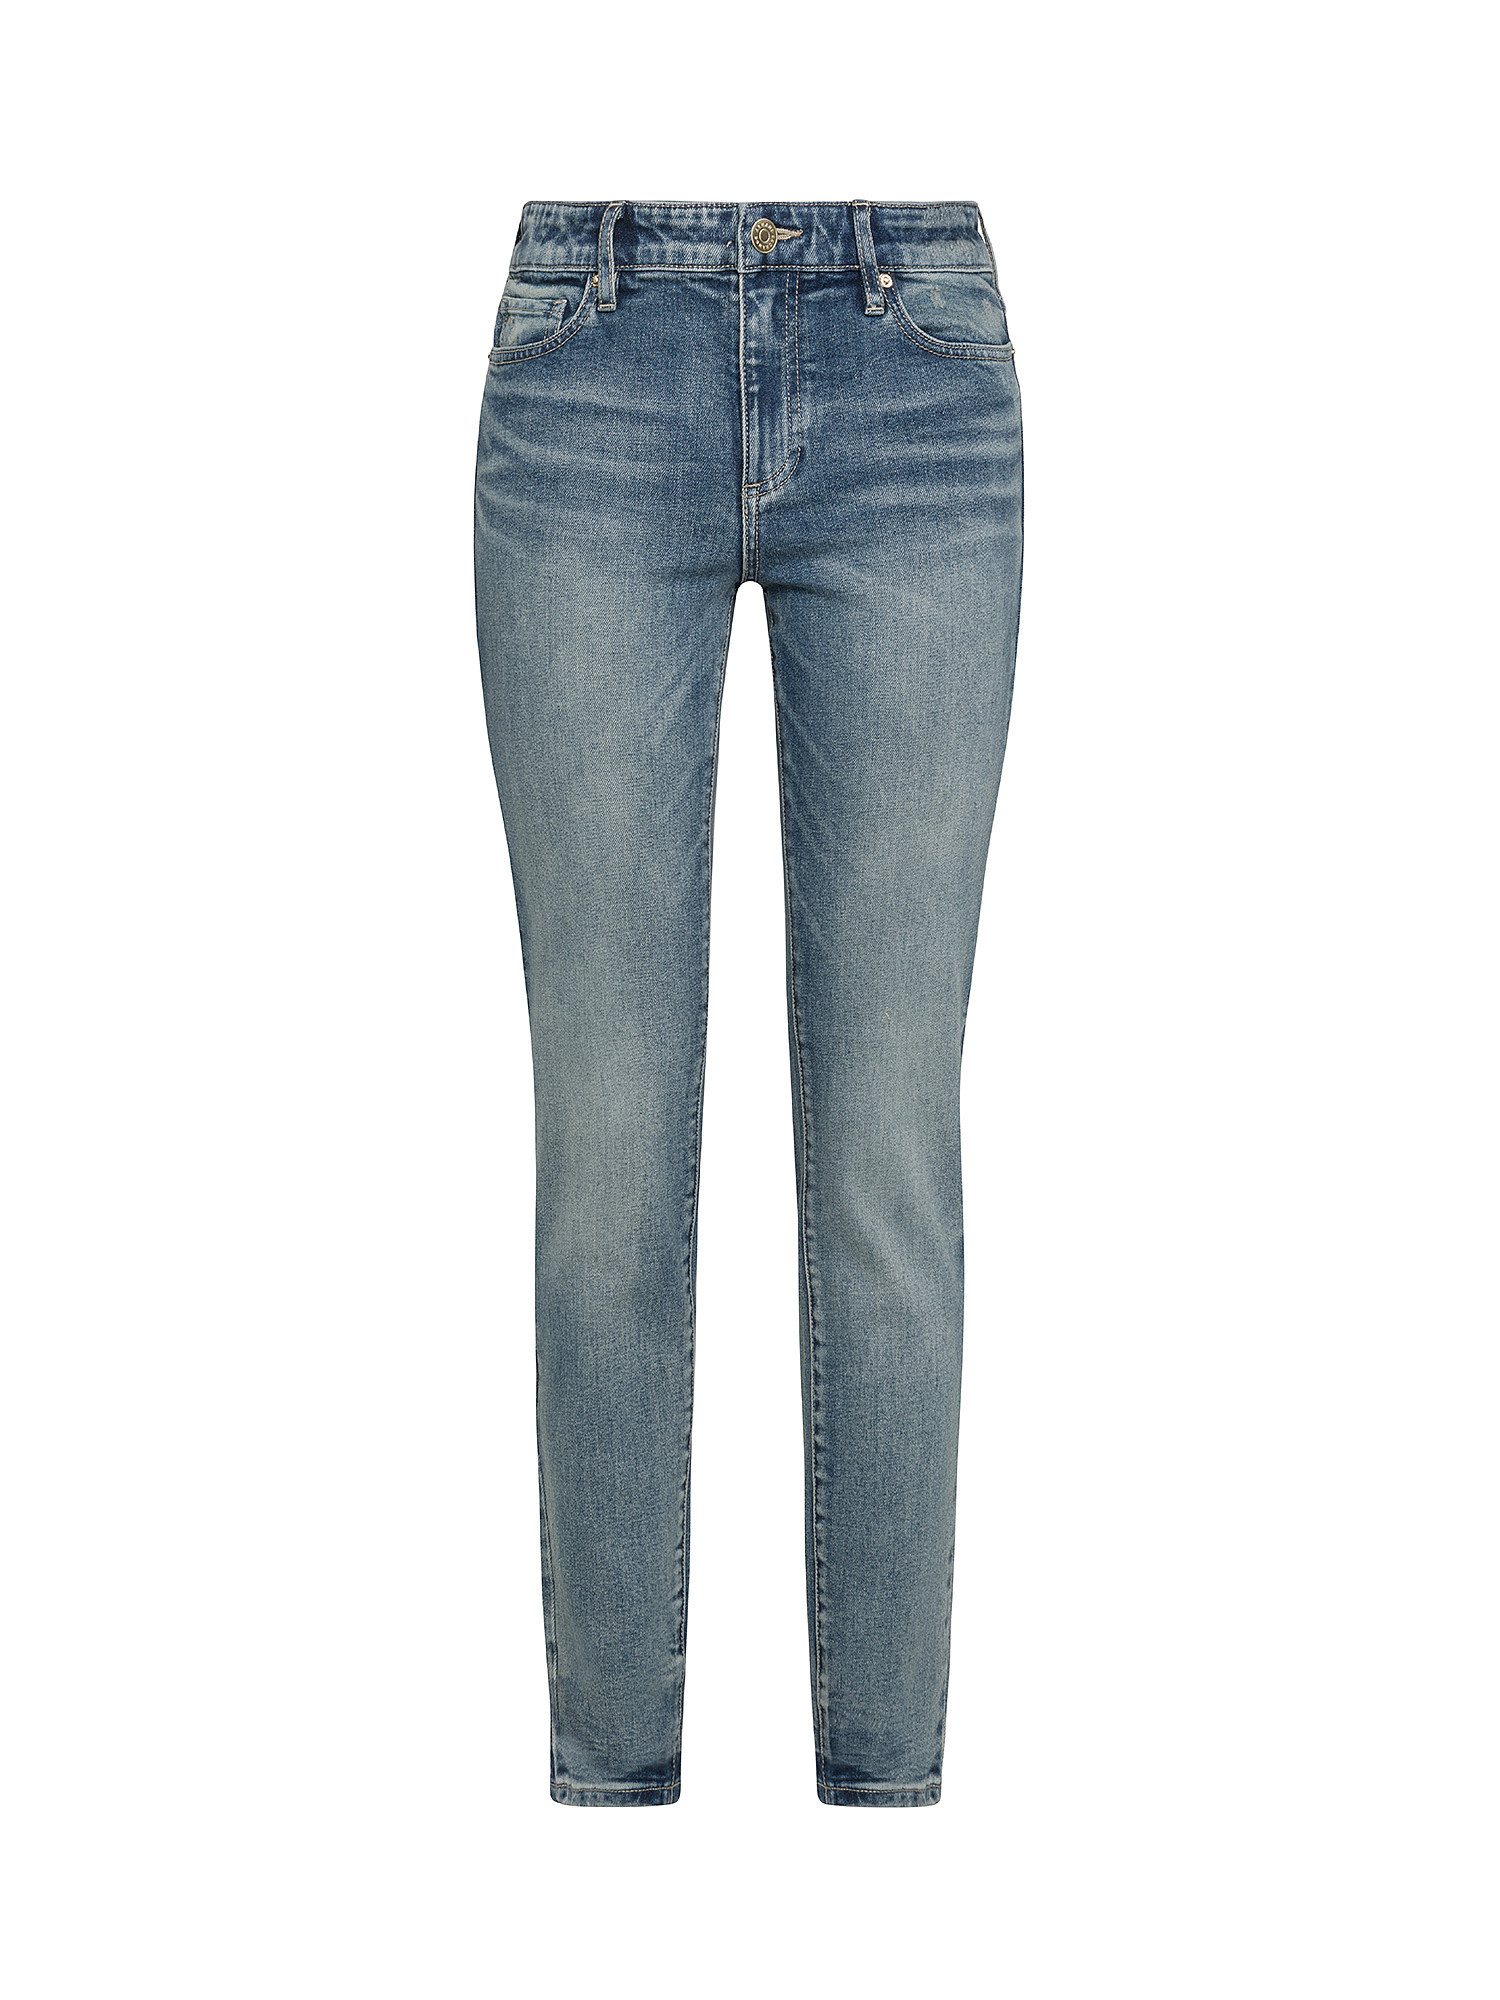 Armani Exchange - Jeans super skinny cinque tasche, Denim, large image number 0